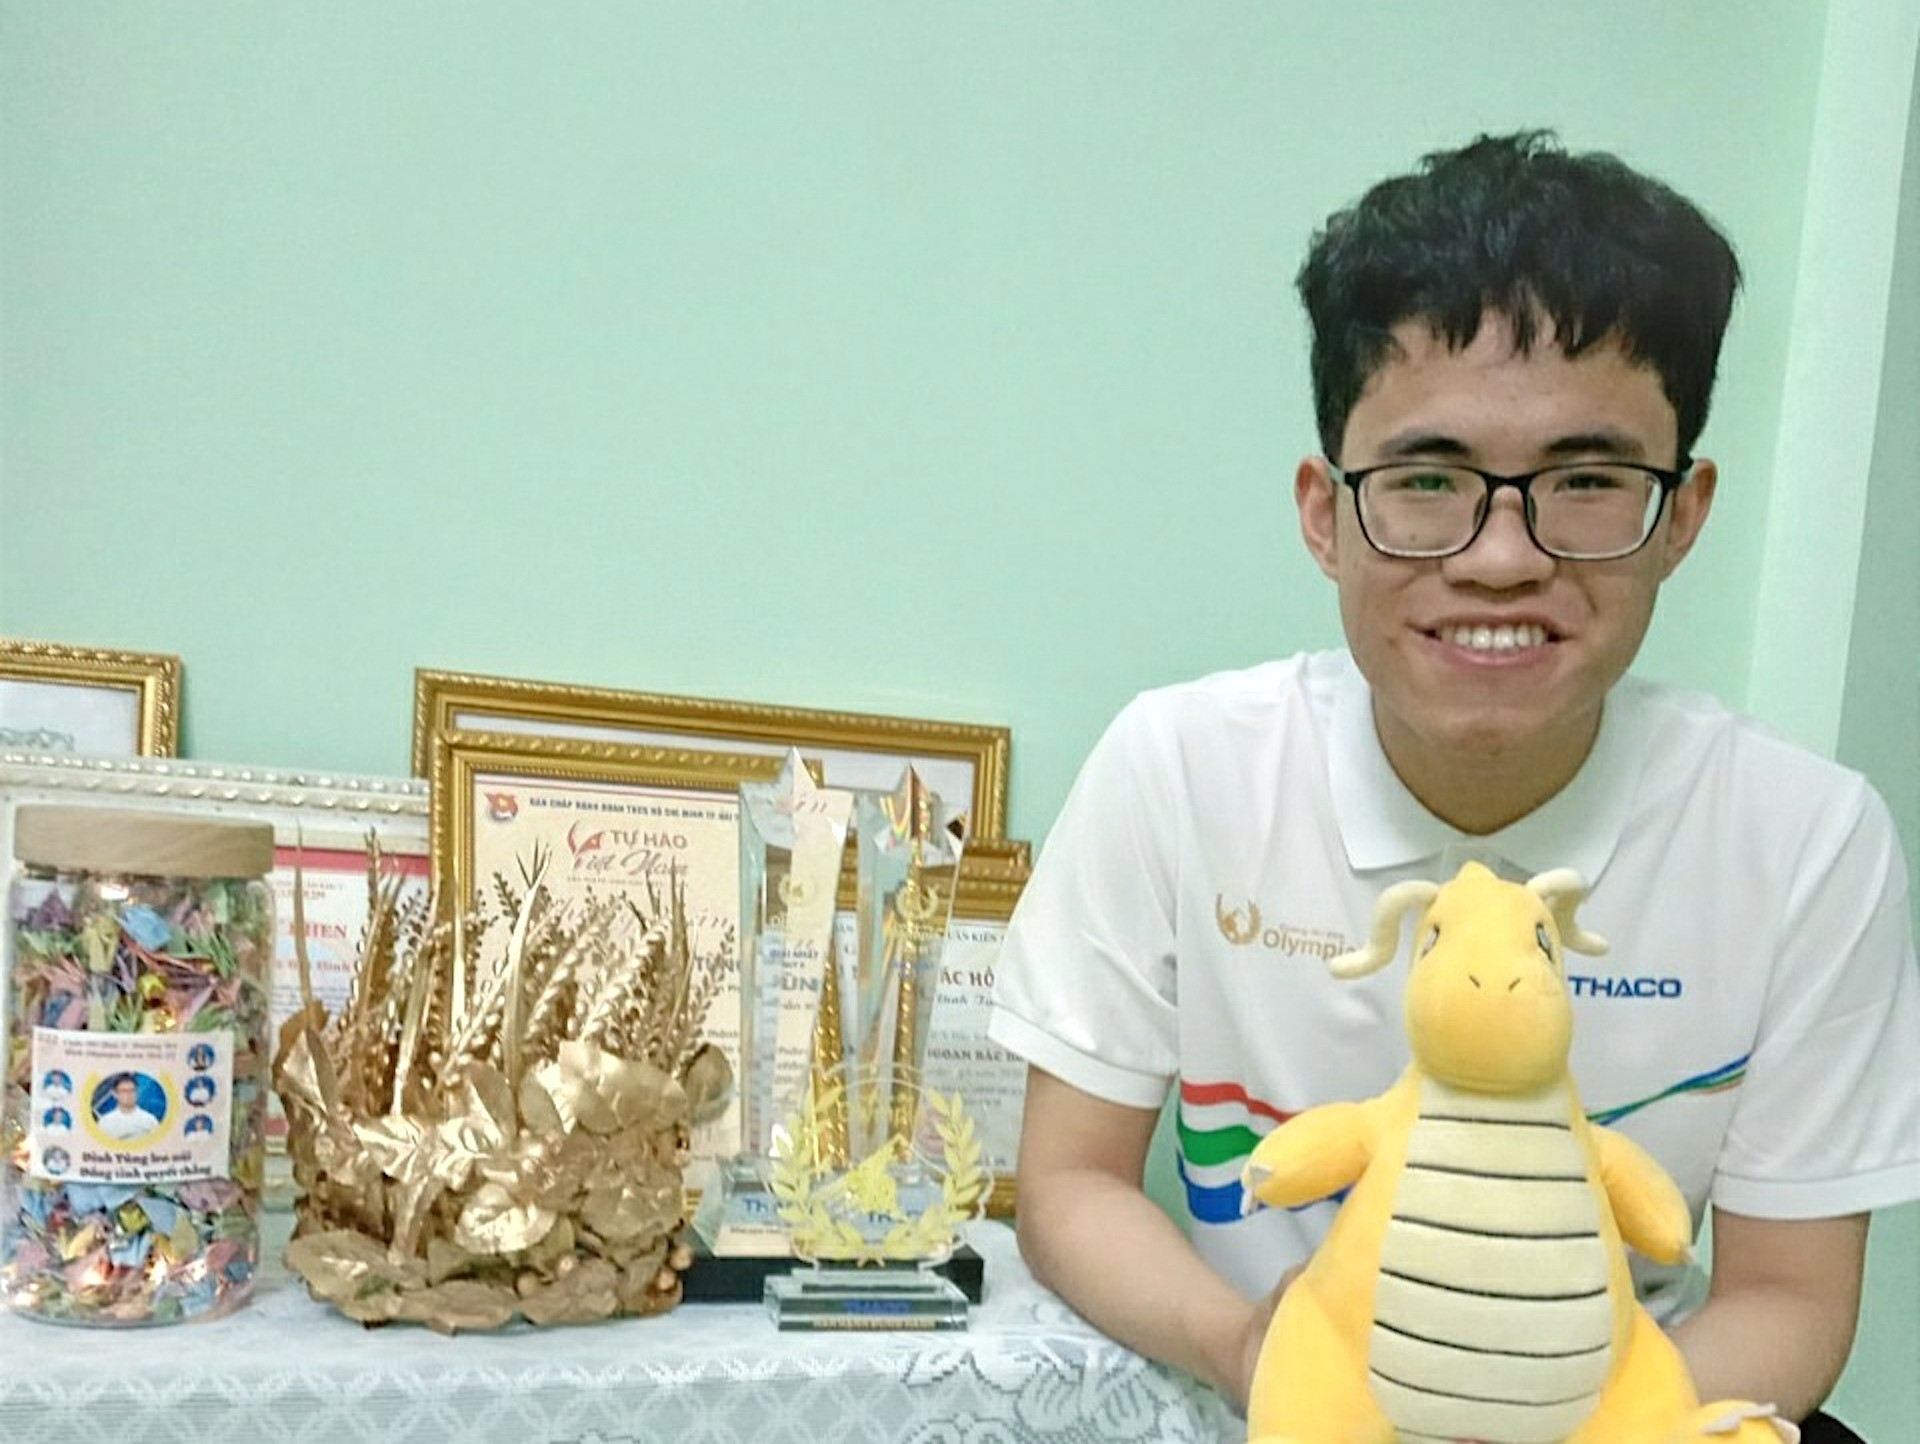 Nam sinh Hải Phòng chuyên Toán, giỏi Sử - ứng viên sáng giá vô địch Olympia 2022 - 1